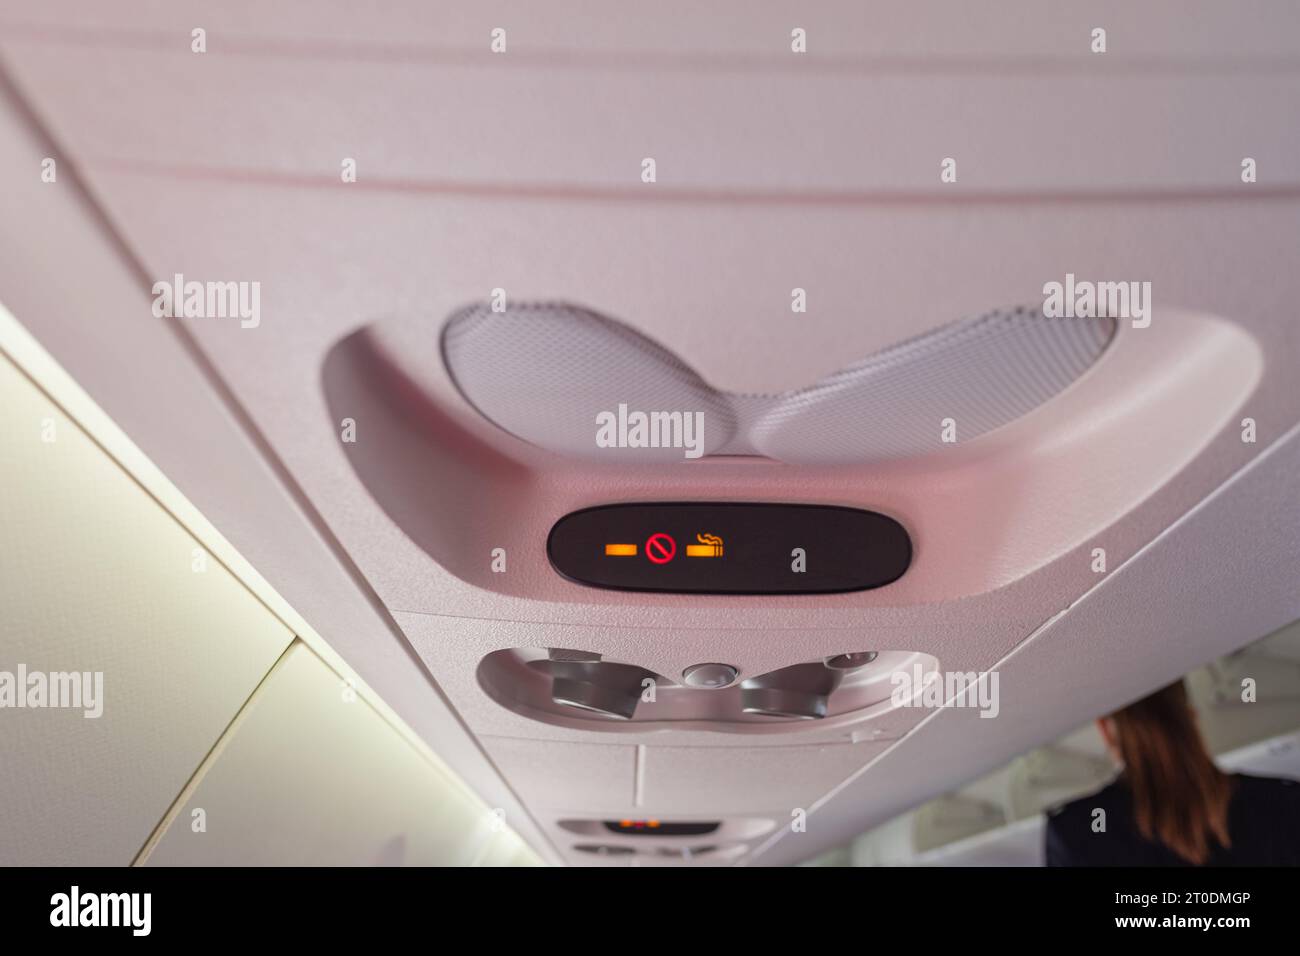 vue de l'indicateur d'interdiction de fumer et de boucler la ceinture de sécurité situé au-dessus de la cabine d'un avion en vol Banque D'Images